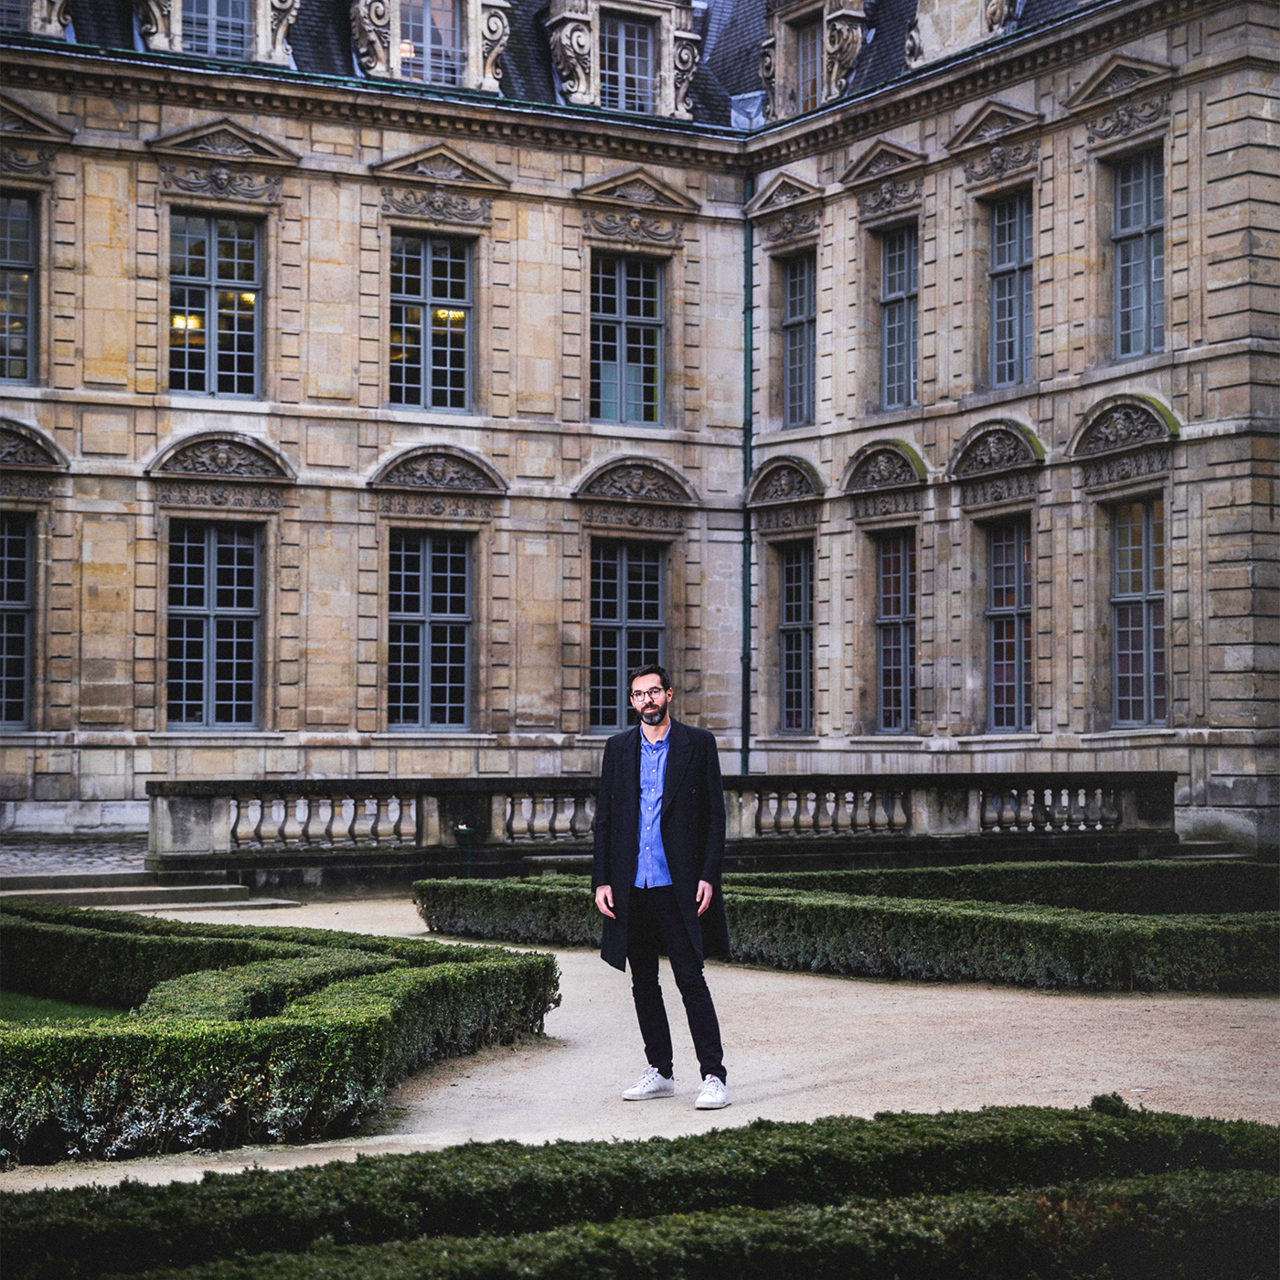 Paris Hotel Boutique Journal: Vuitton or Goyard?